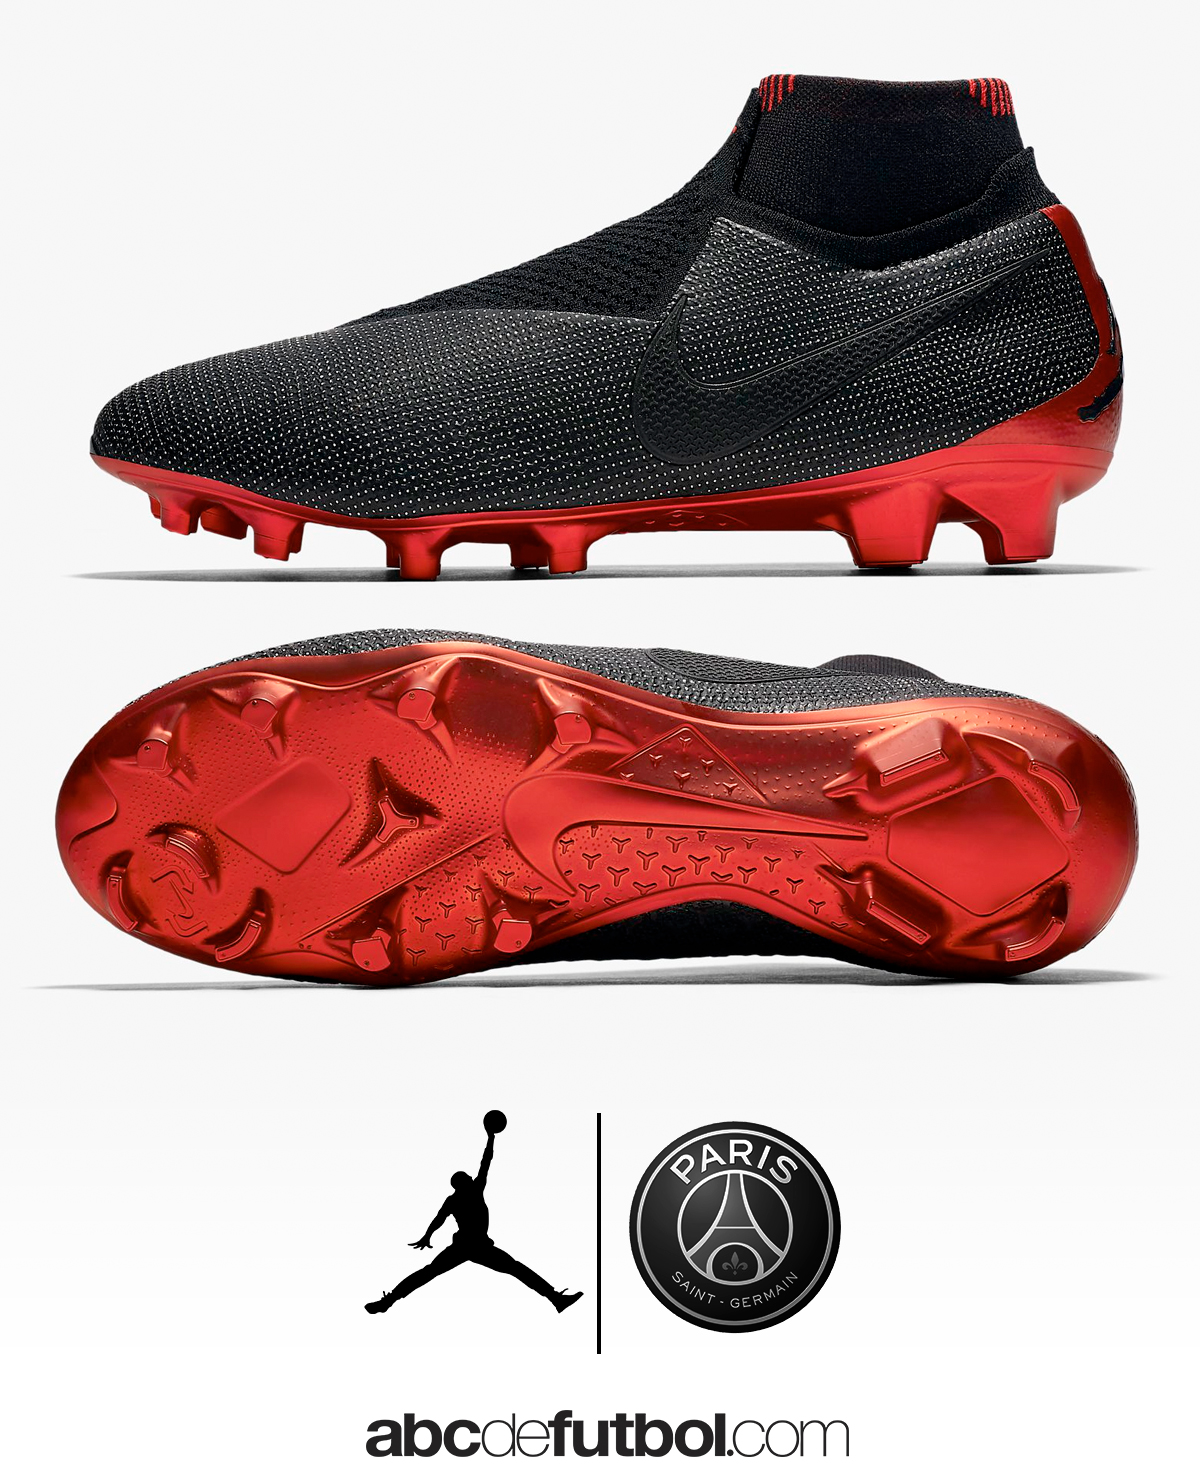 adverbio Abierto excursionismo Nike Jordan X Paris Saint-Germain Collection... EspectÃ¡culo aparte |  abcdefutbol